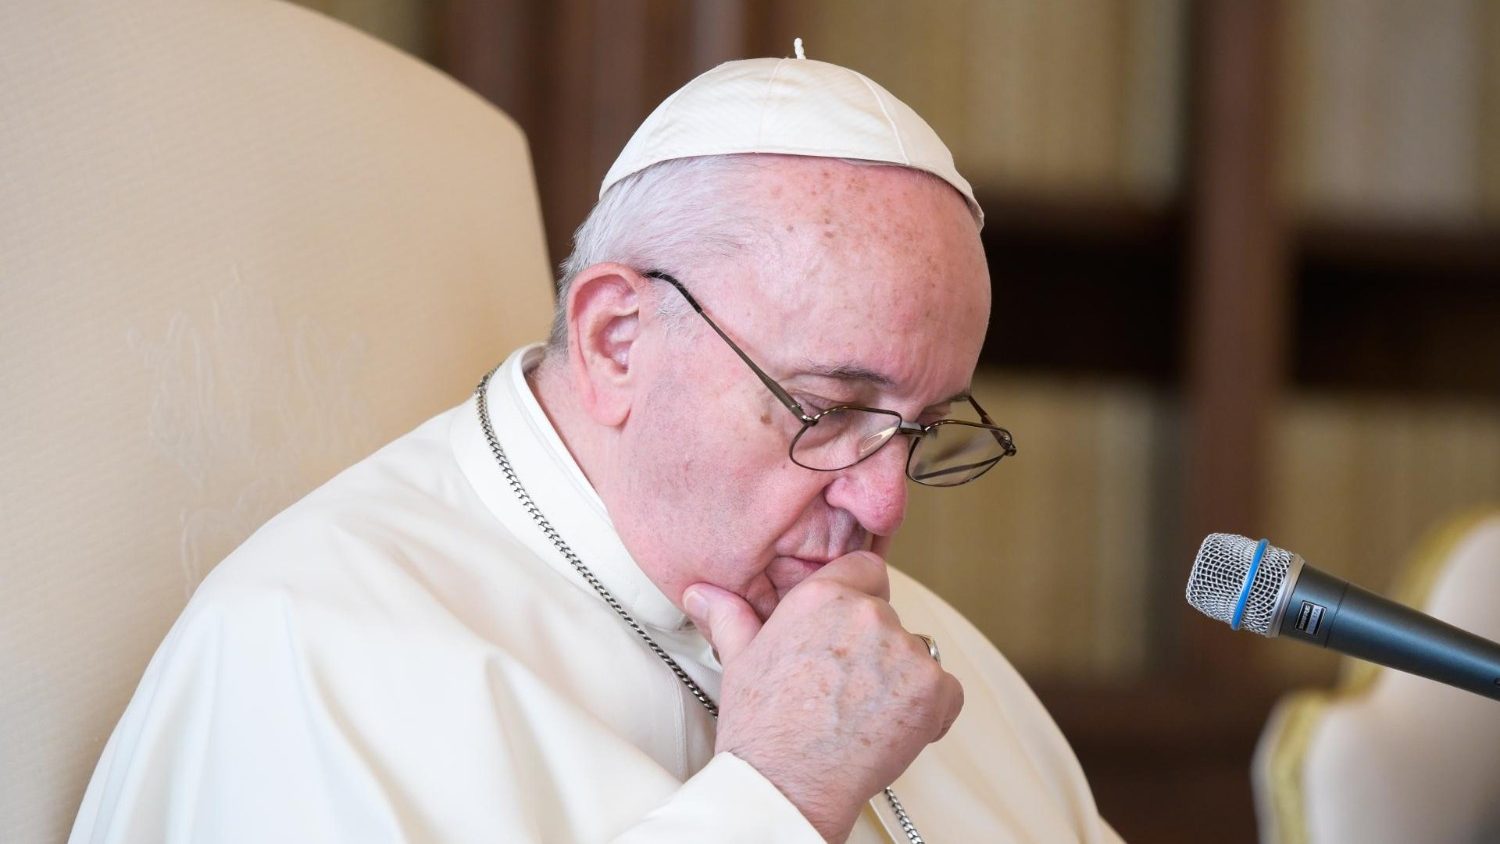 Отчёт по делу МакКаррика, Папа: «Близость к жертвам»